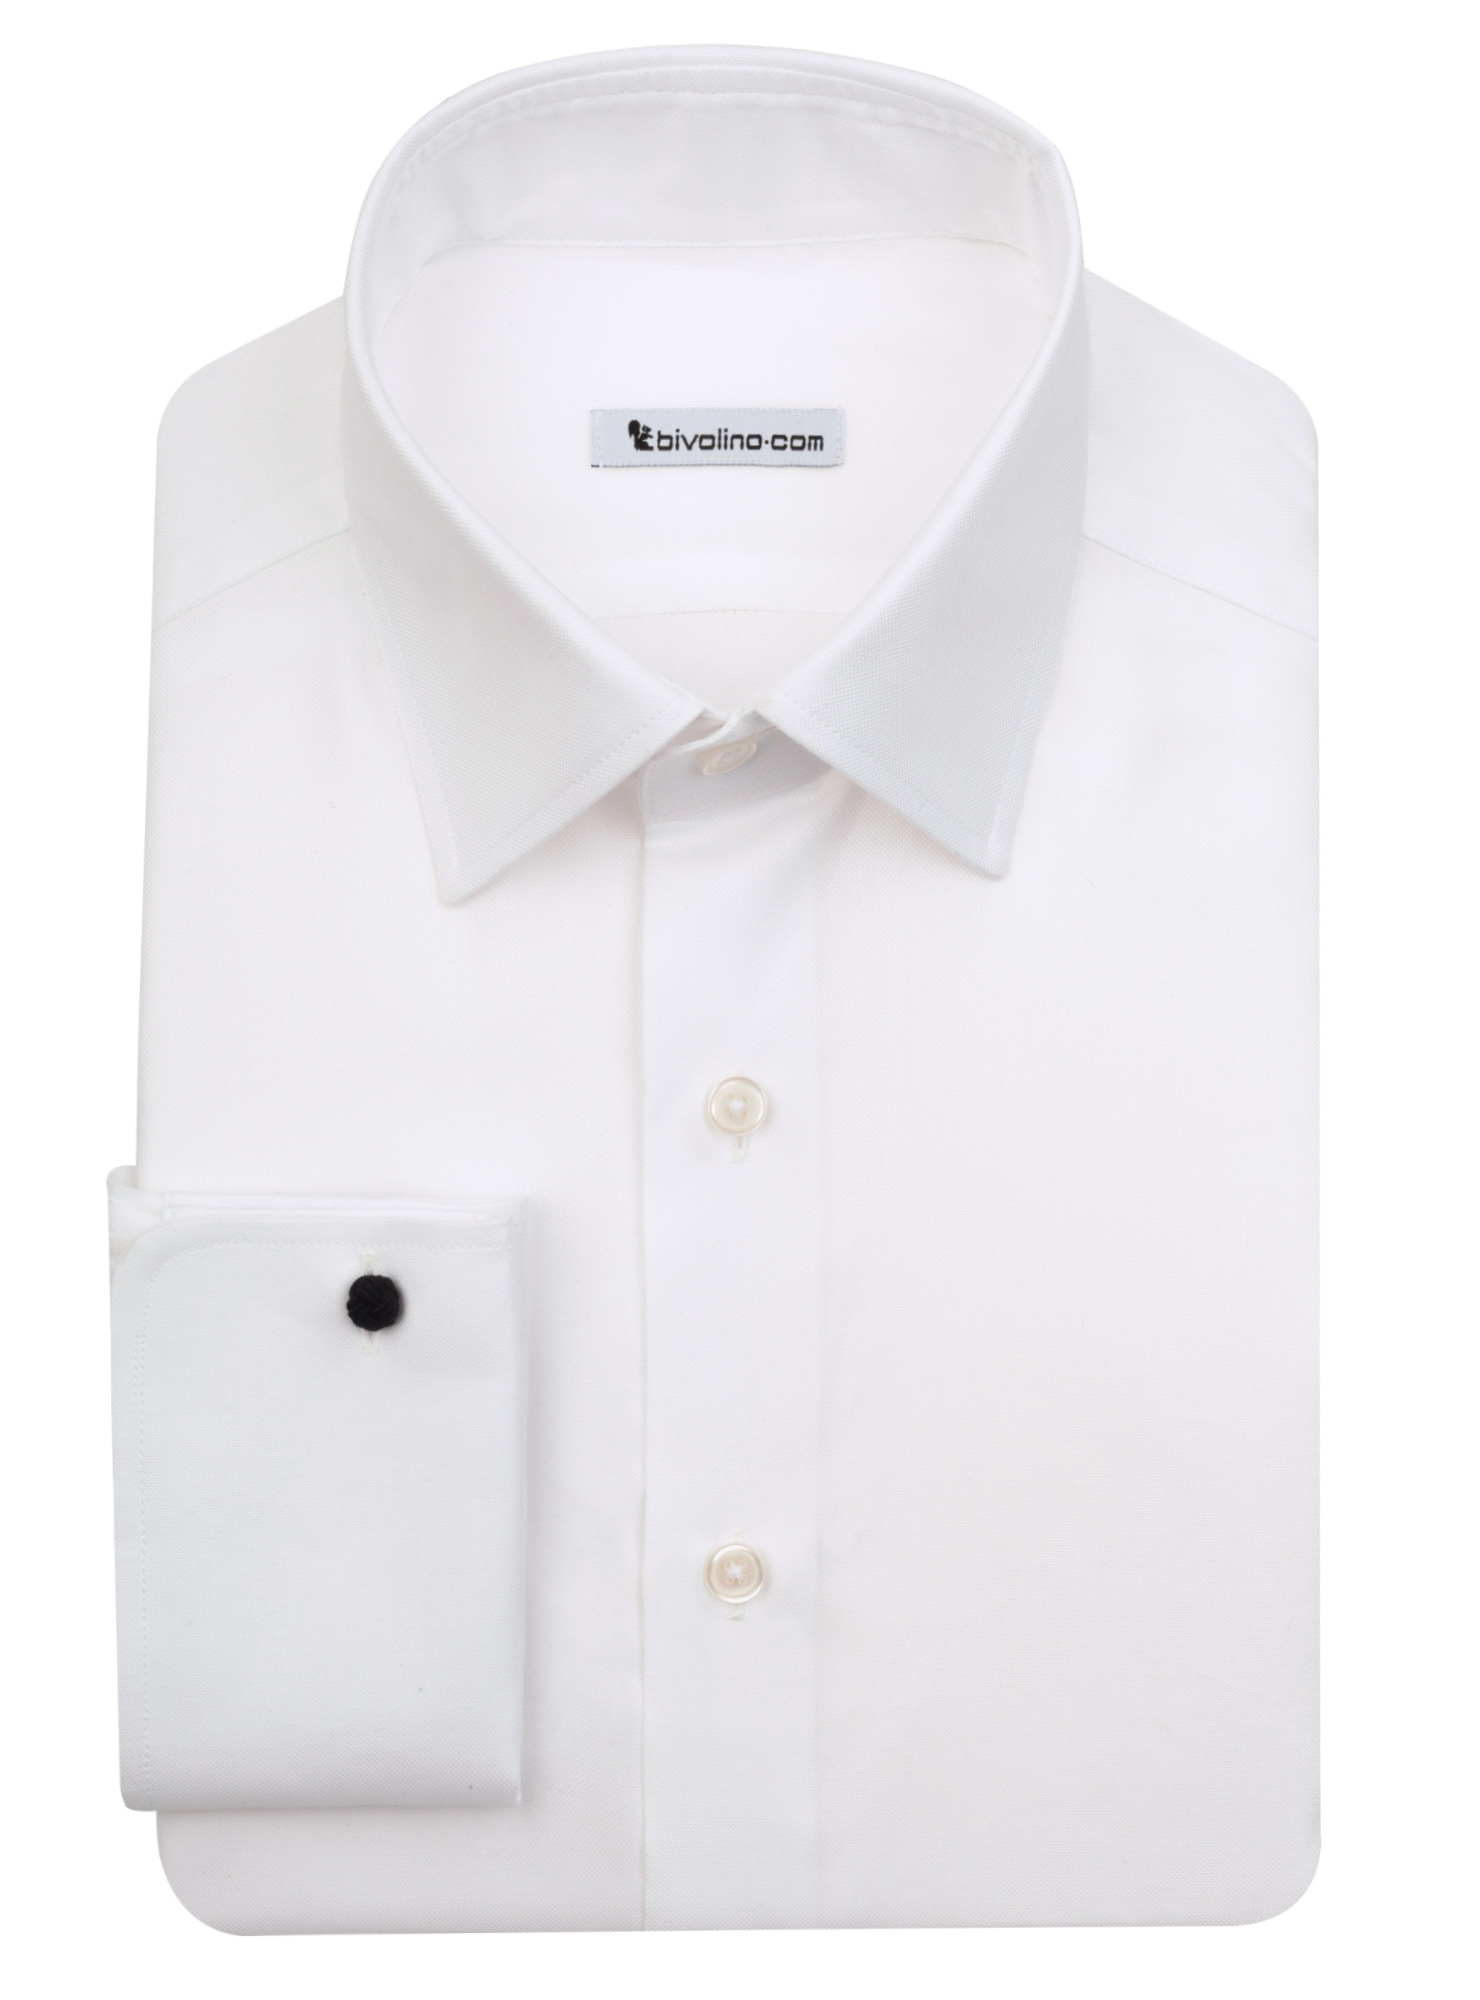 TRENTO - Oxford de algodón blanco real camisa de hombre - LABA 2 